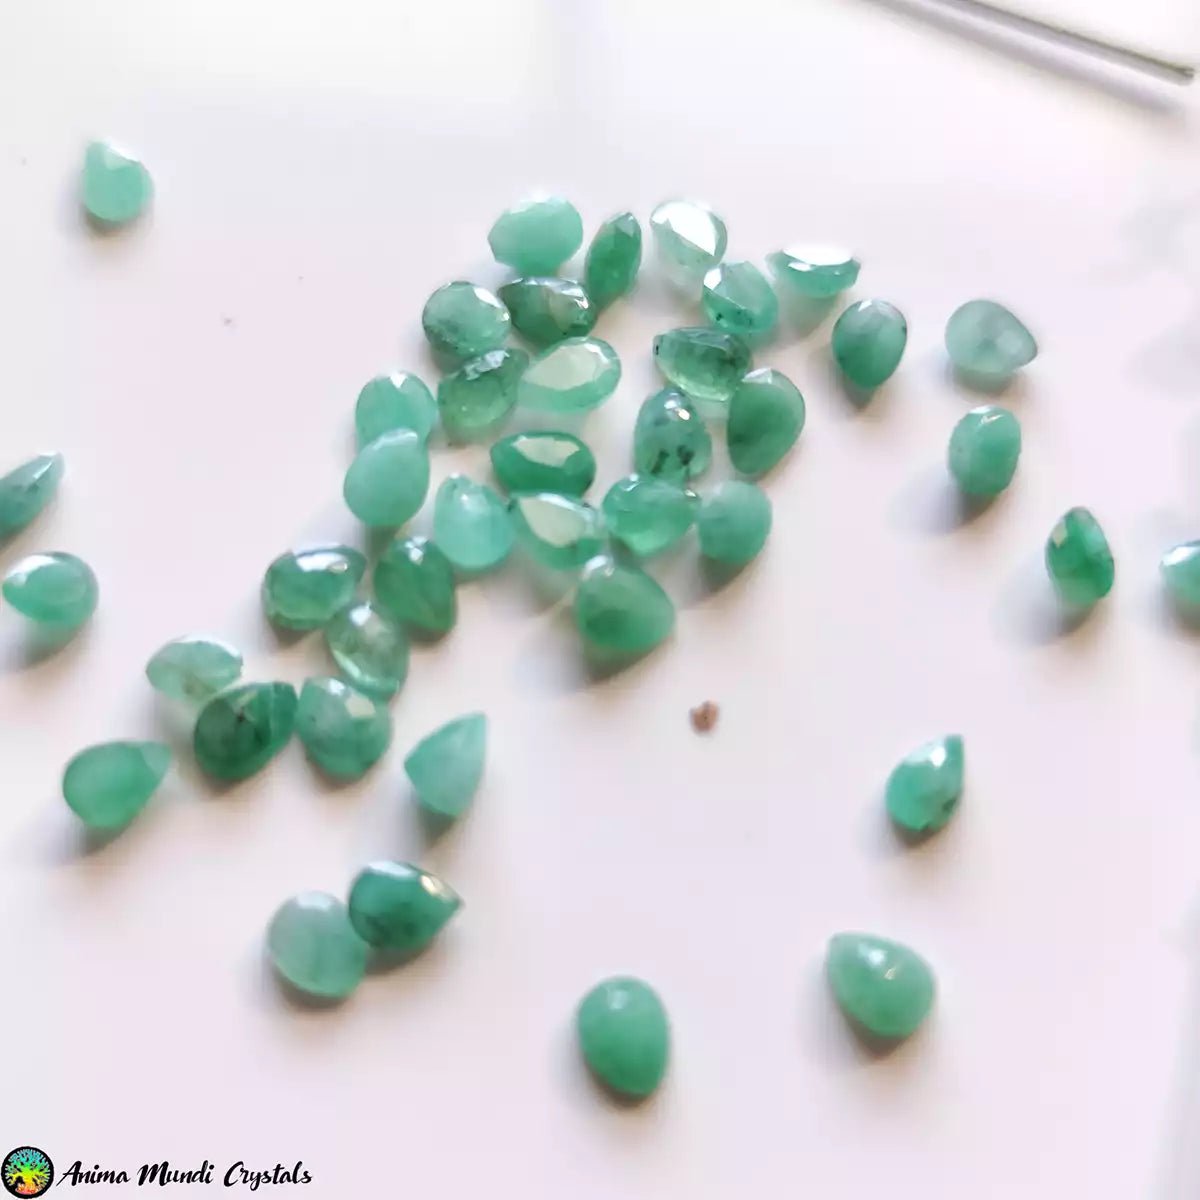 Cabujones pequeños talla pera esmeralda - Anima Mundi Crystals